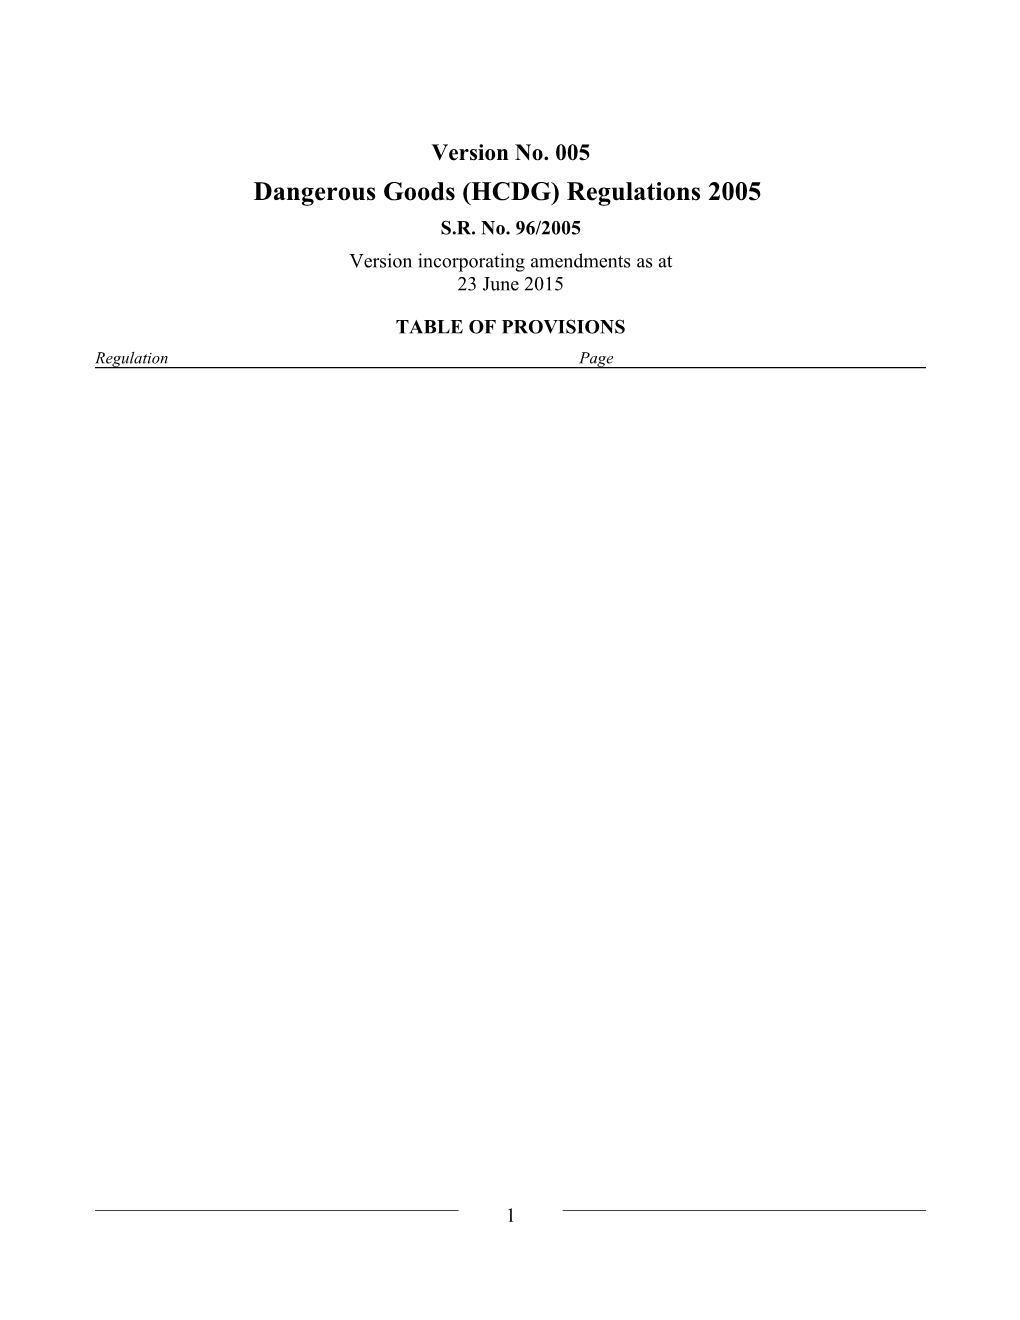 Dangerous Goods (HCDG) Regulations 2005